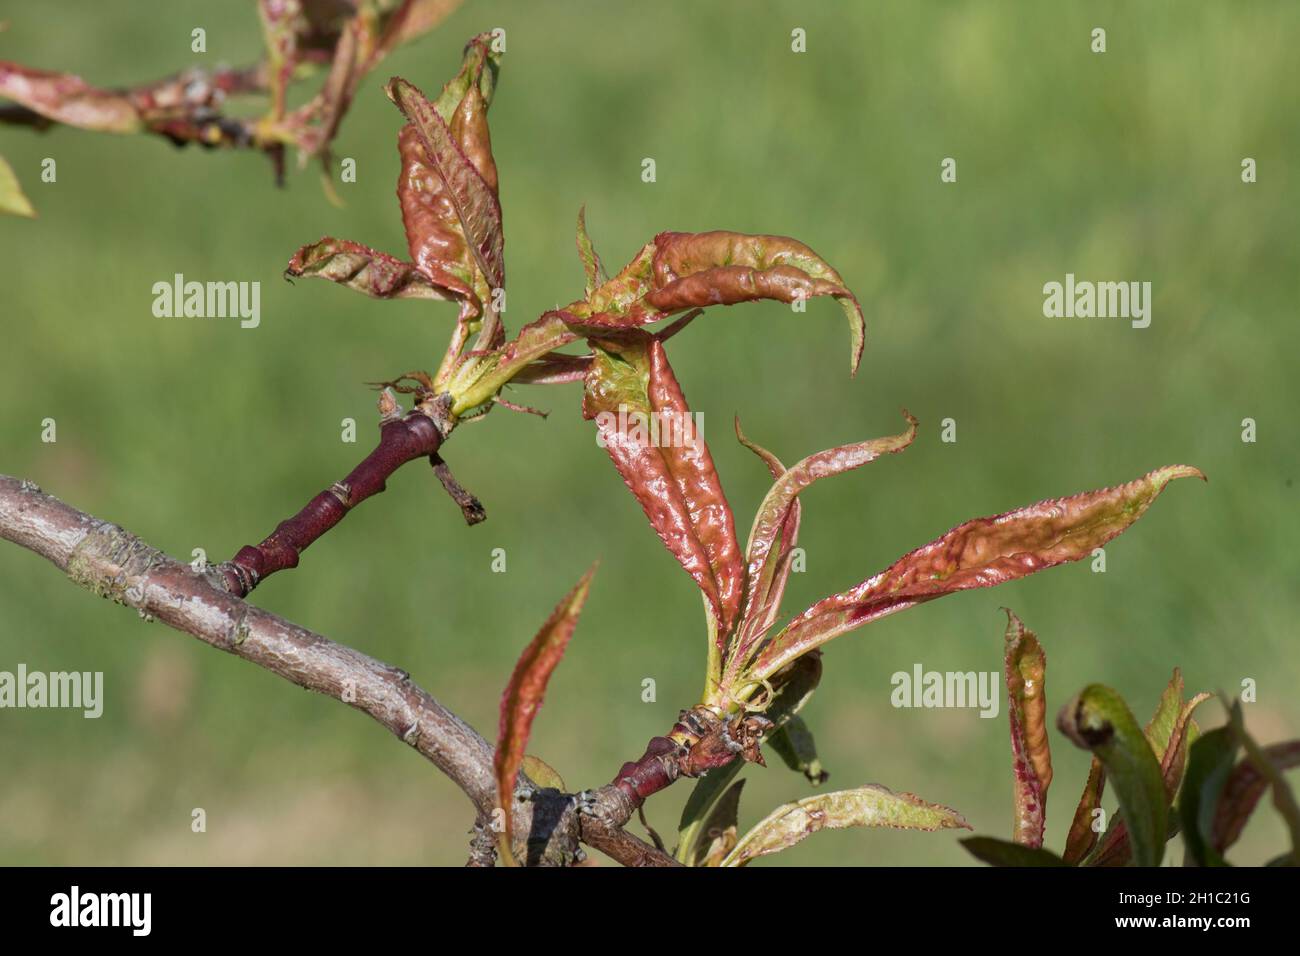 Curl foglia di pesca (Taphrina deformans) arrossamento e curling sintomi evidenti su foglie in sviluppo recente, Berksdhire, maggio Foto Stock